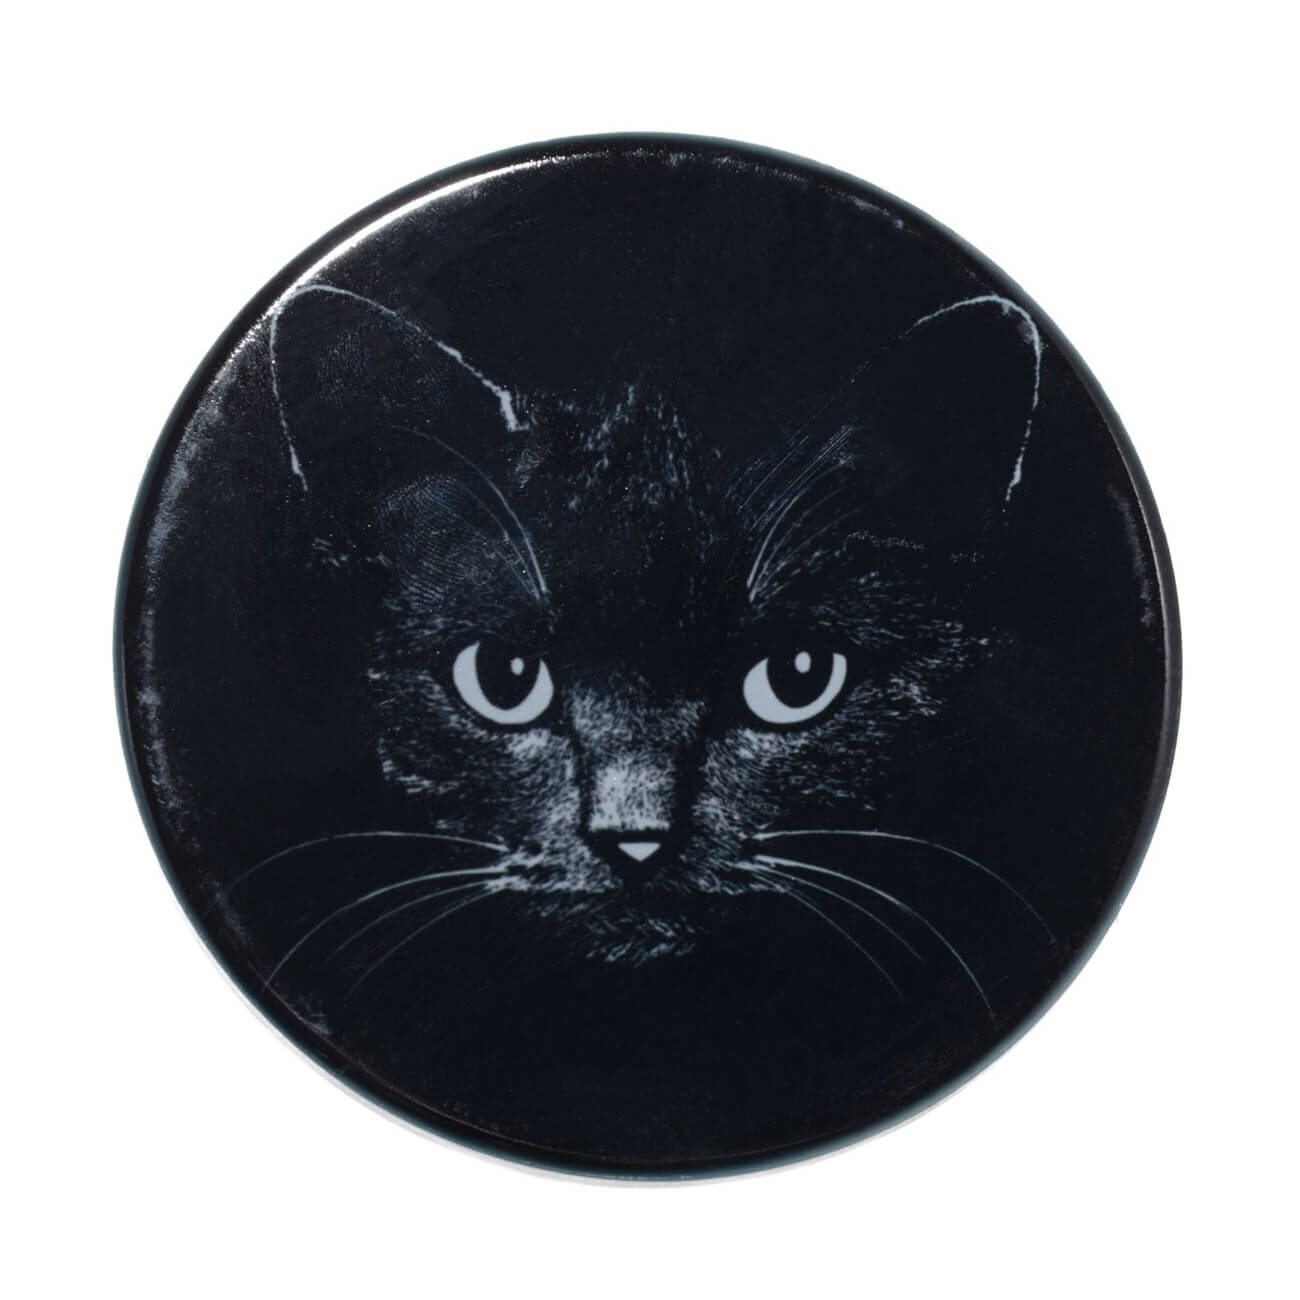 Подставка под кружку, 11x11 см, керамика/пробка, круглая, черная, Ночной кот, Cat night подставка на подголовник mdc 106 пластиковая черная